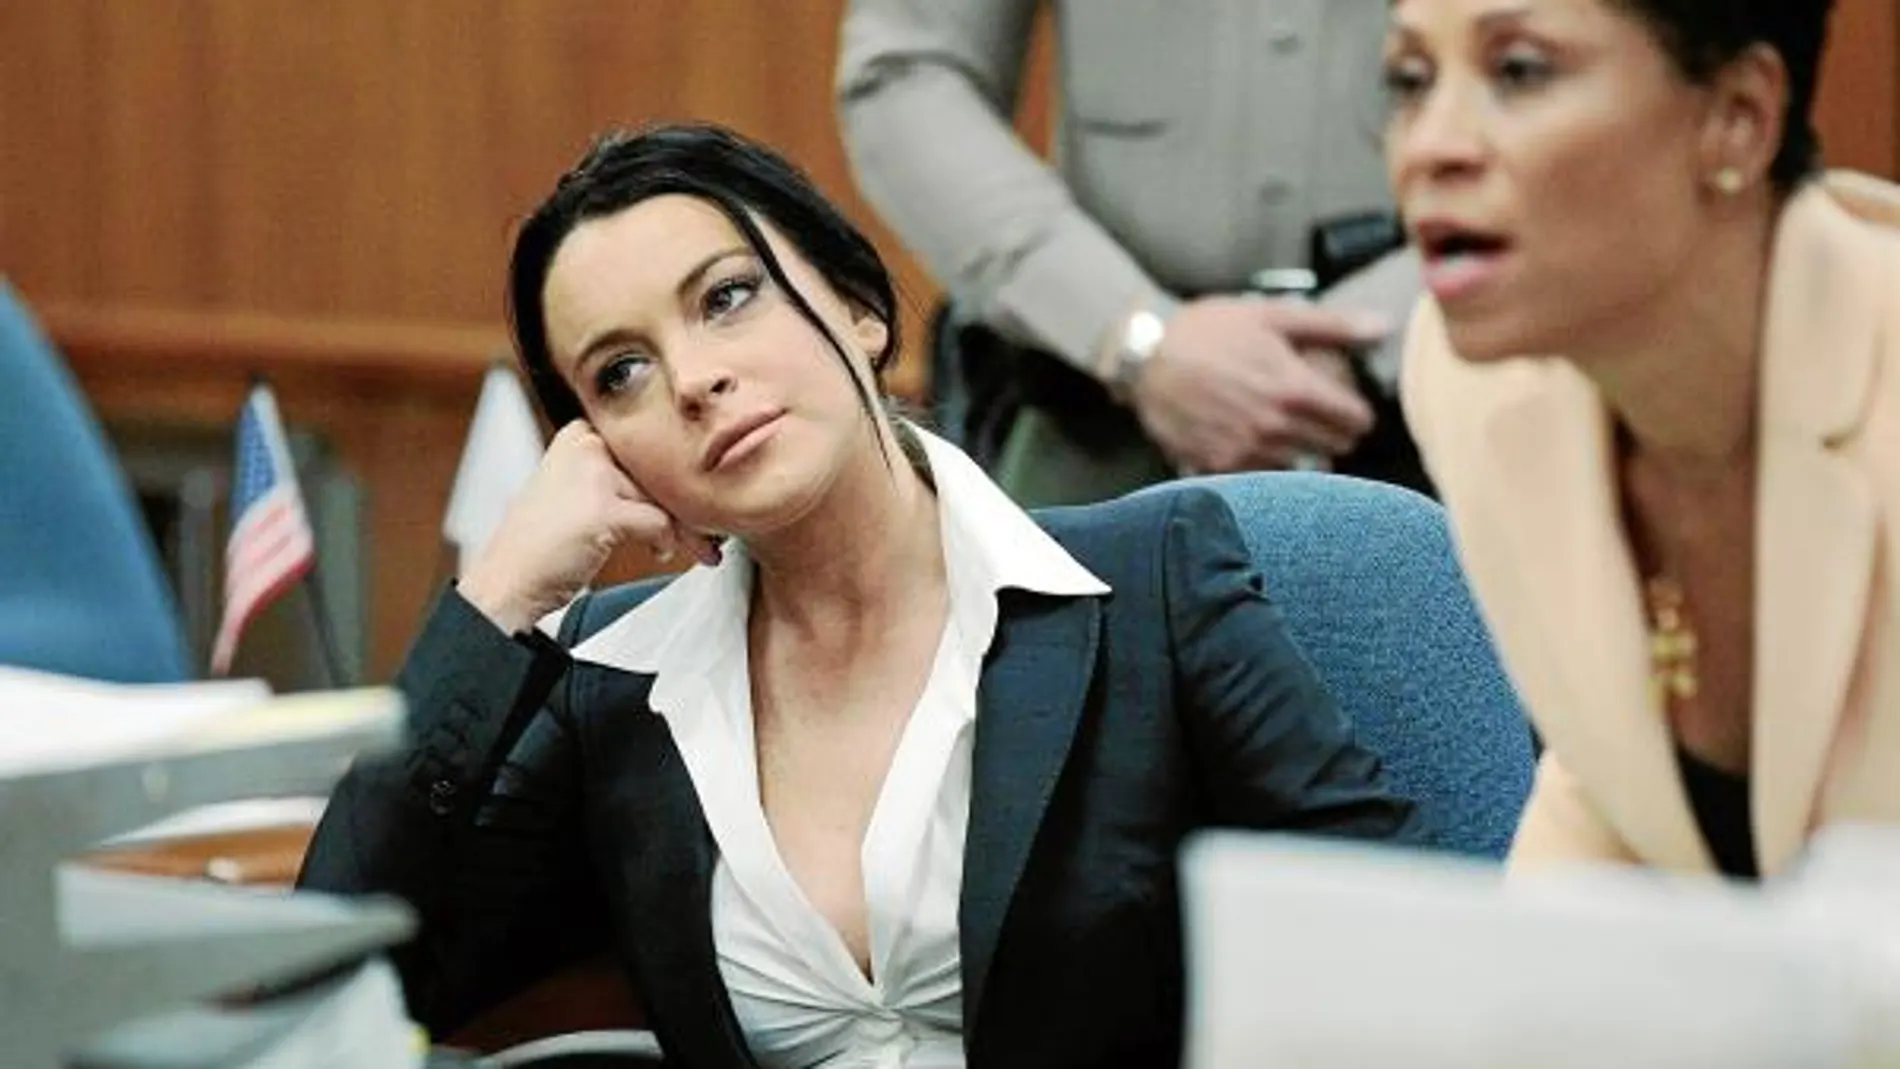 Lindsay Lohan, en el juicio con un escote hasta el ombligo